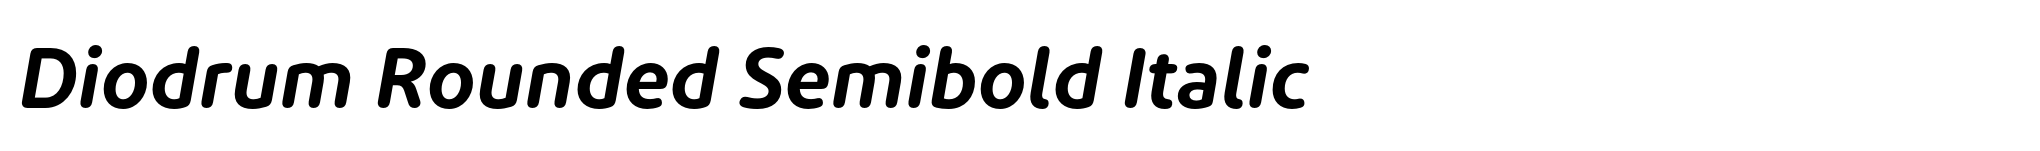 Diodrum Rounded Semibold Italic image